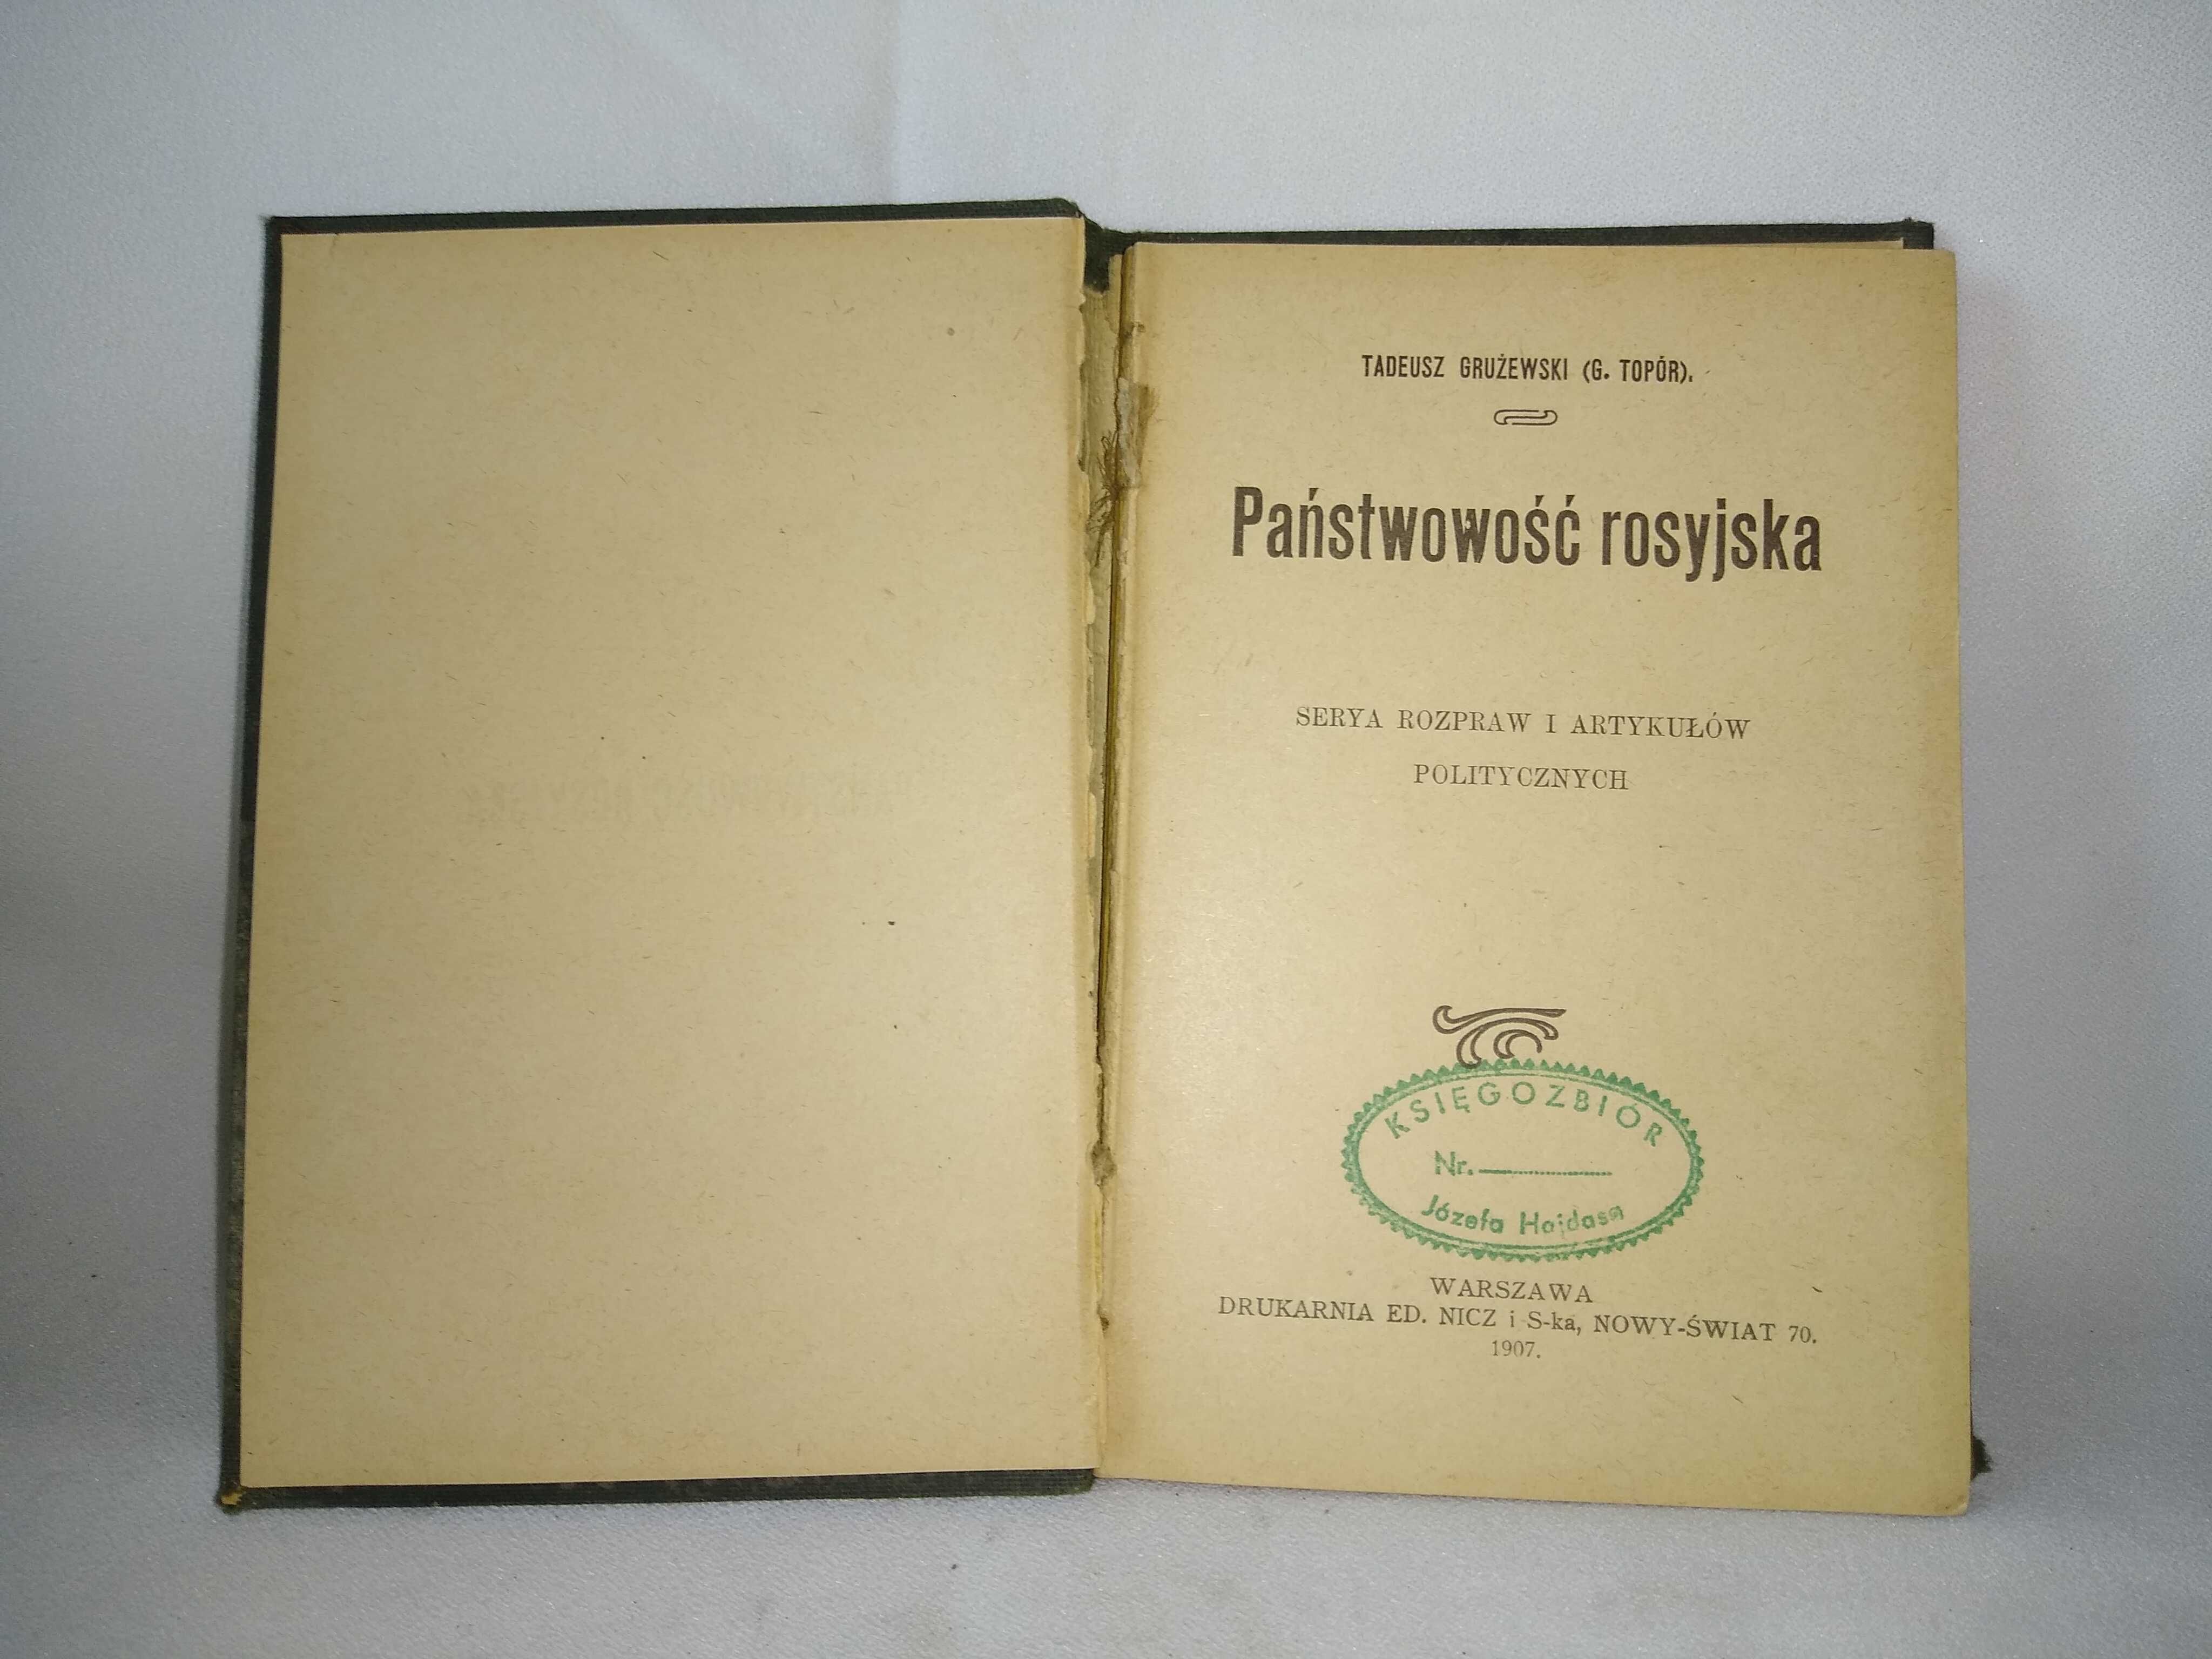 T. Grużewski (G. Topór), Państwowość rosyjska, 1907r